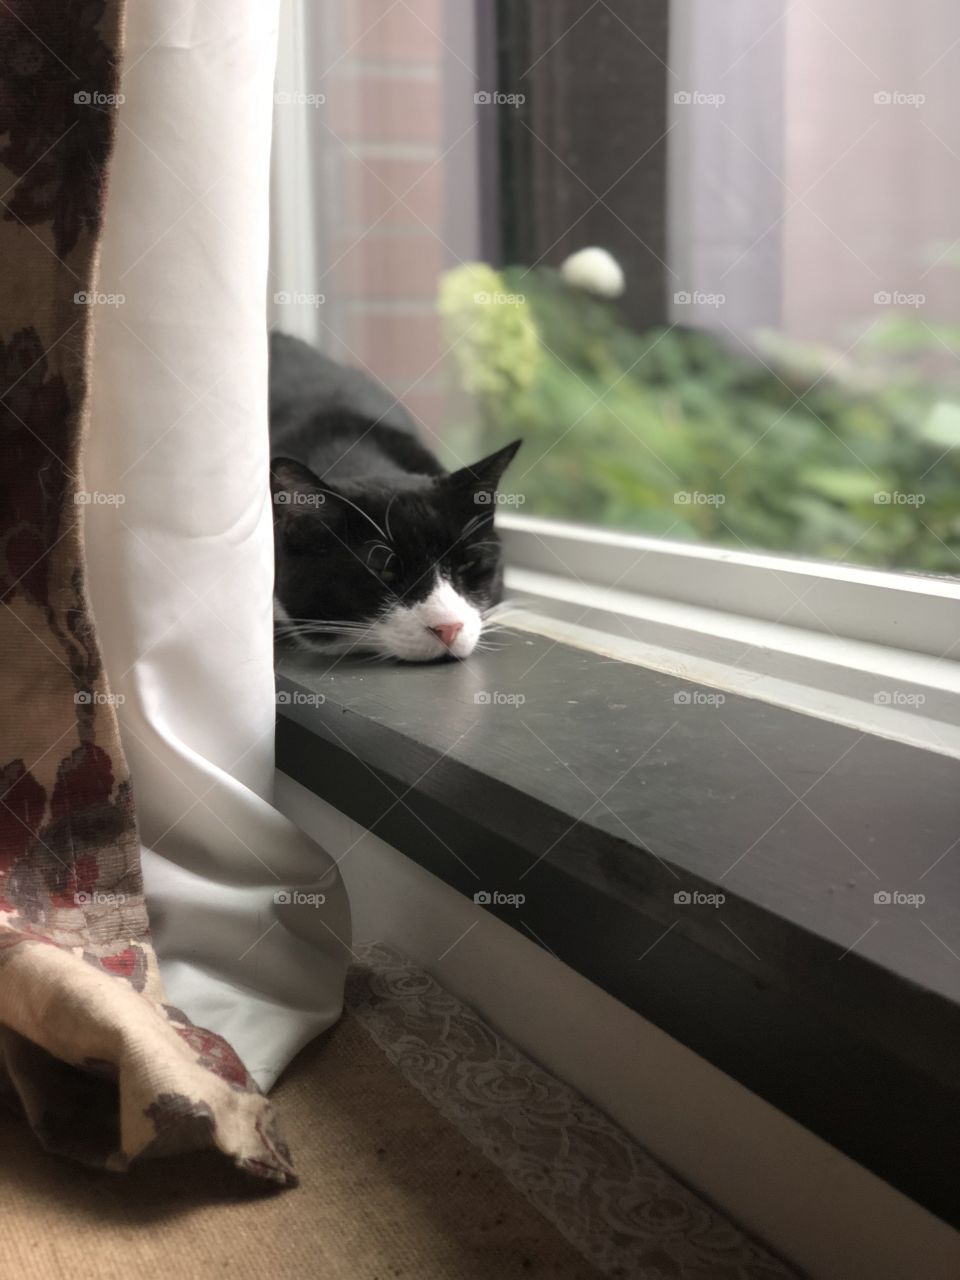 Sleepy cat sunbathing in the window 